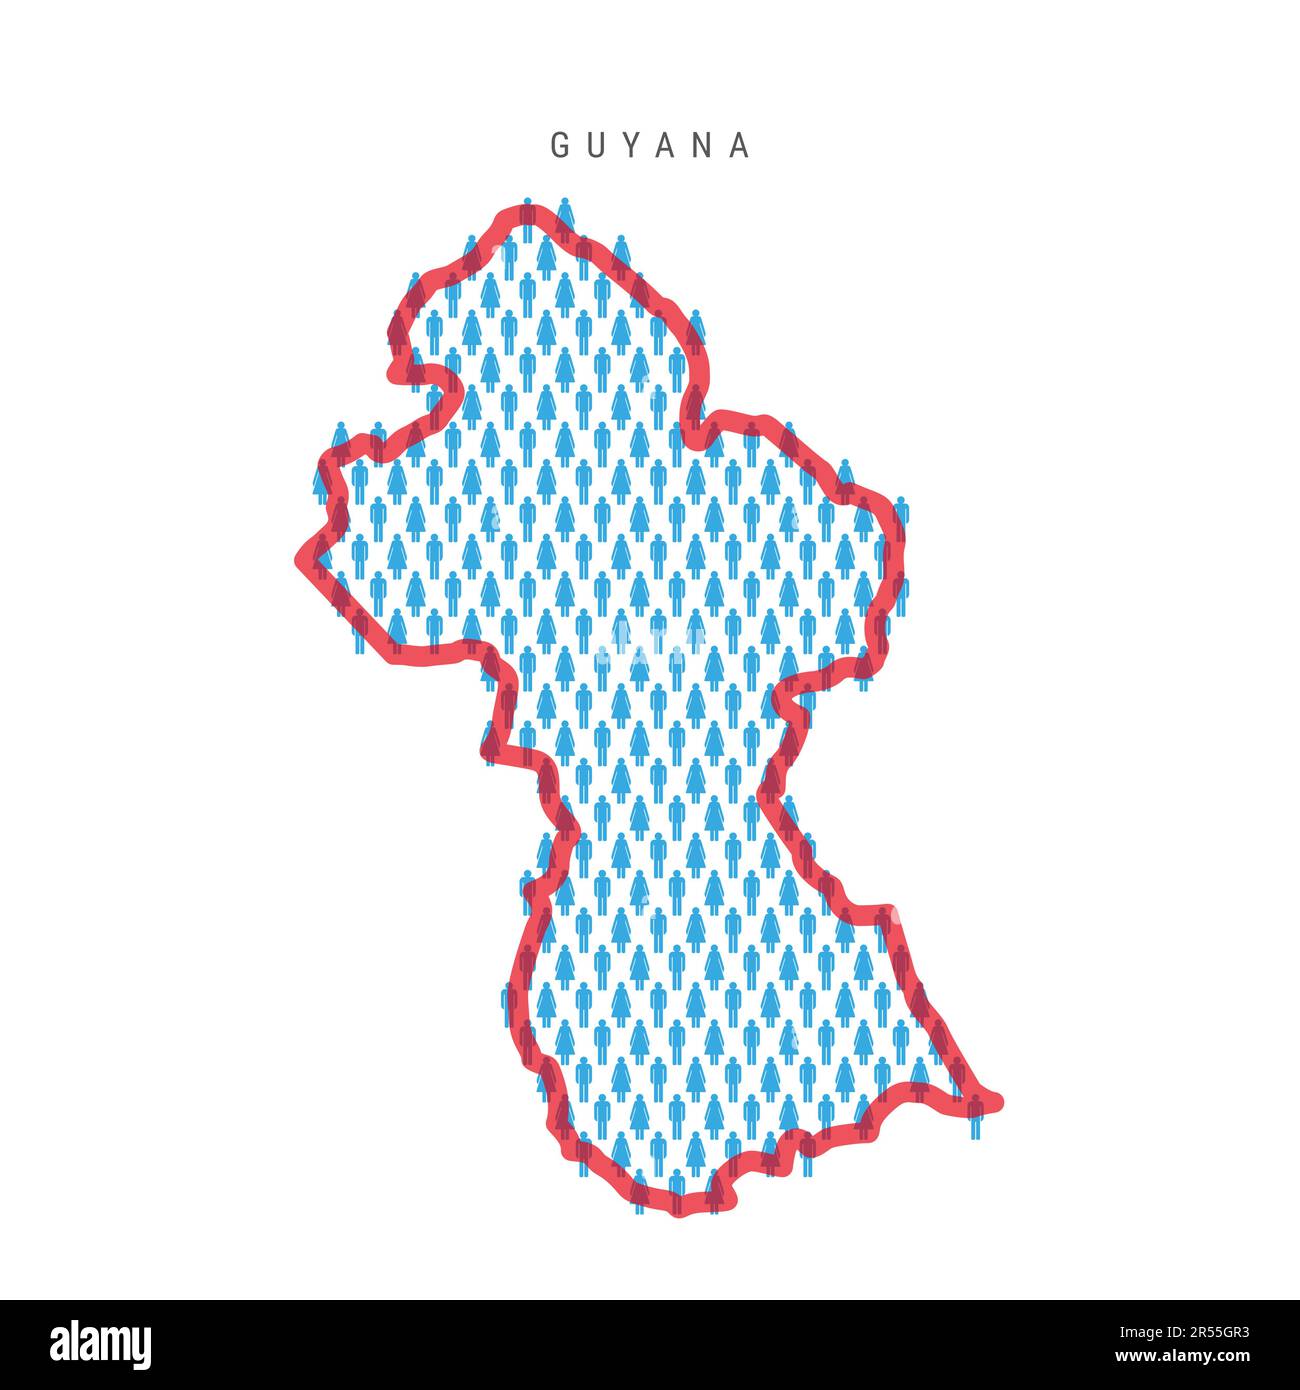 Einwohnerkarte Guyana. Strichfiguren Guyanesische Landkarte mit auffälliger roter, durchsichtiger Landesgrenze. Muster von Männer- und Frauensymbolen. Isolierter Vektor krank Stock Vektor